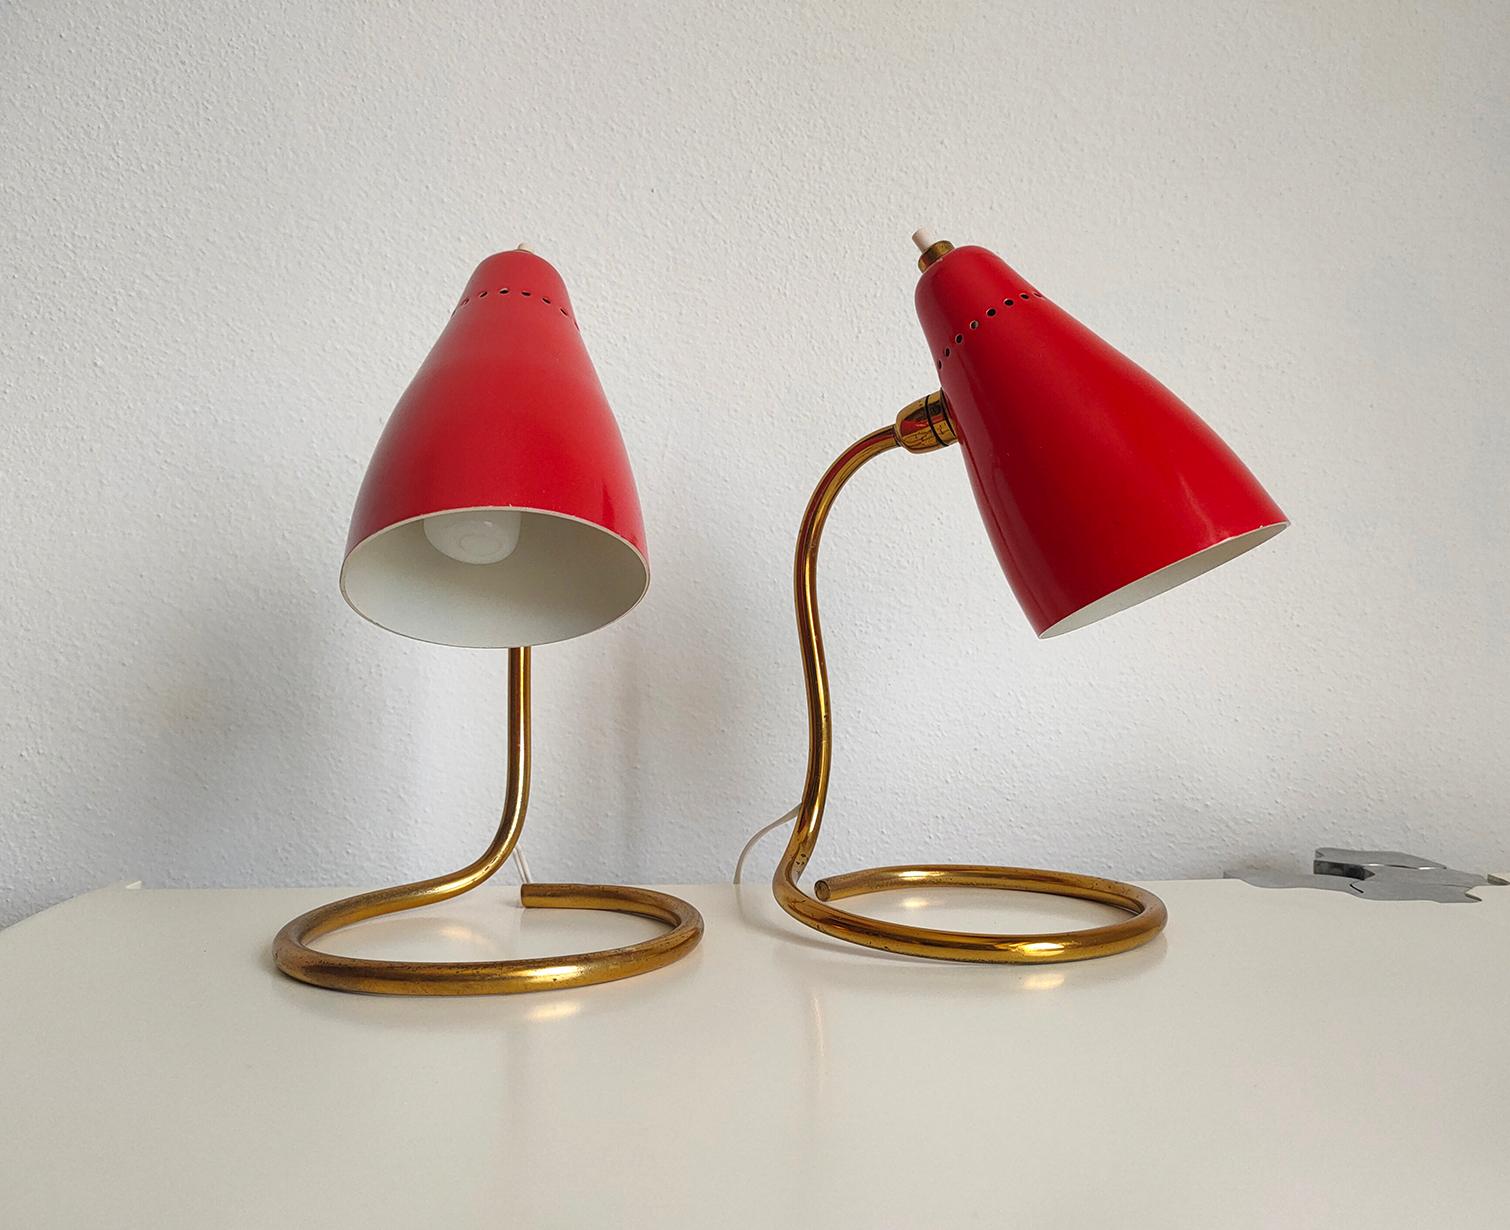 Ensemble de deux lampes italiennes raffinées Mod. 214 produites par la célèbre société O-Luce. 
La structure est en laiton et se caractérise par des lignes sinueuses. L'abat-jour est ajustable, avec une forme asymétrique particulière et un beau